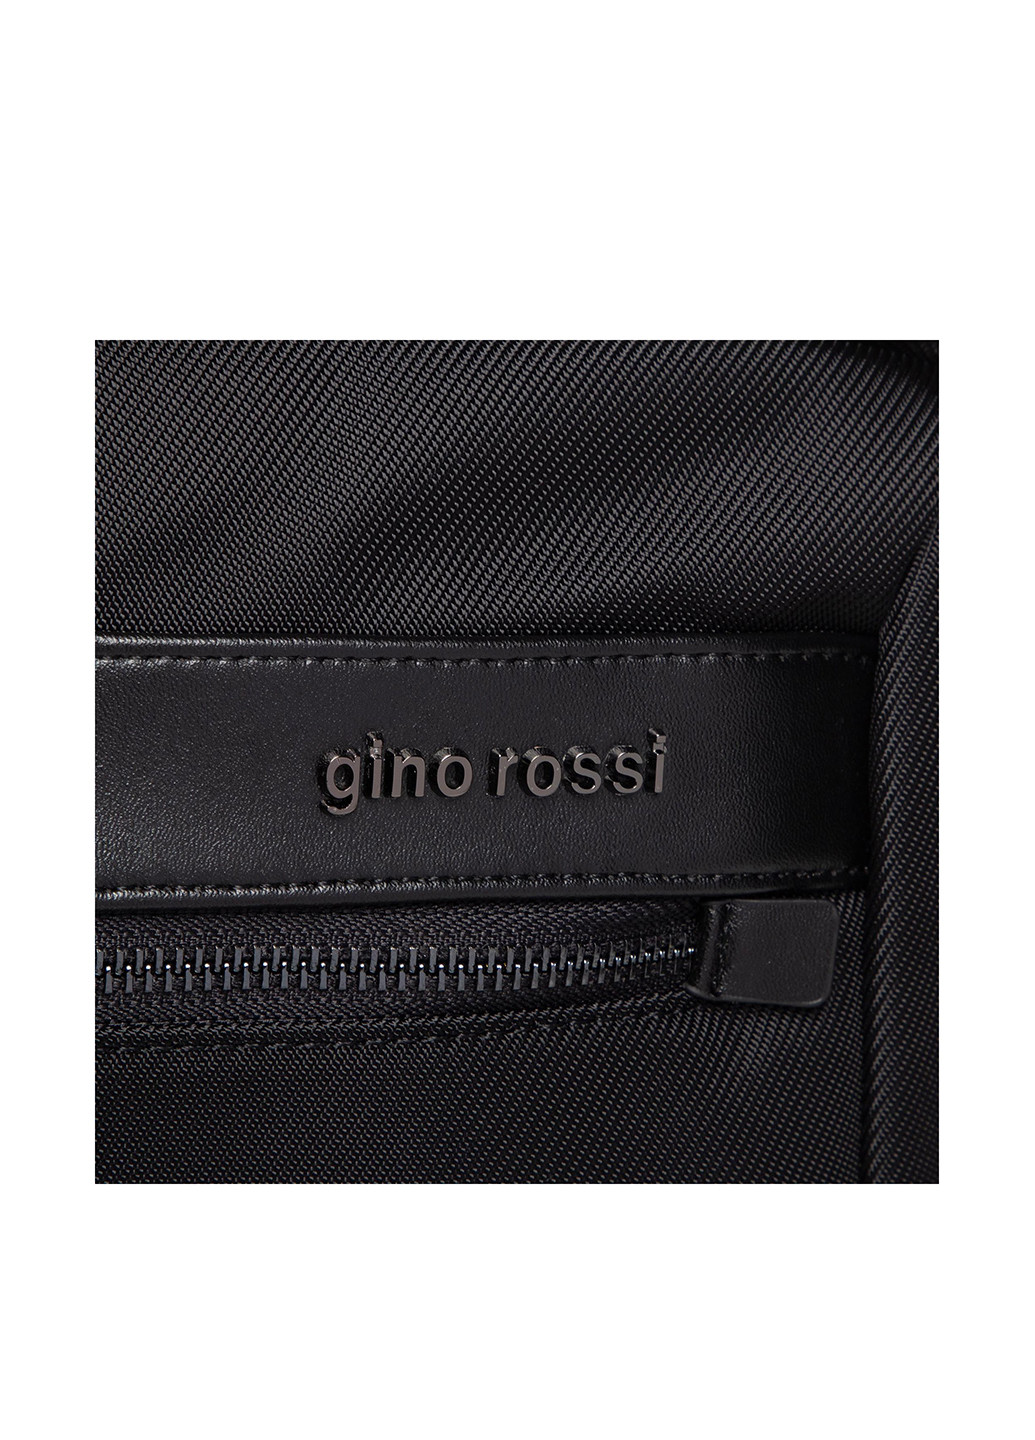 Сумка чоловіча Gino Rossi BGM-S-080-10-04 Gino Rossi однотонная чёрная